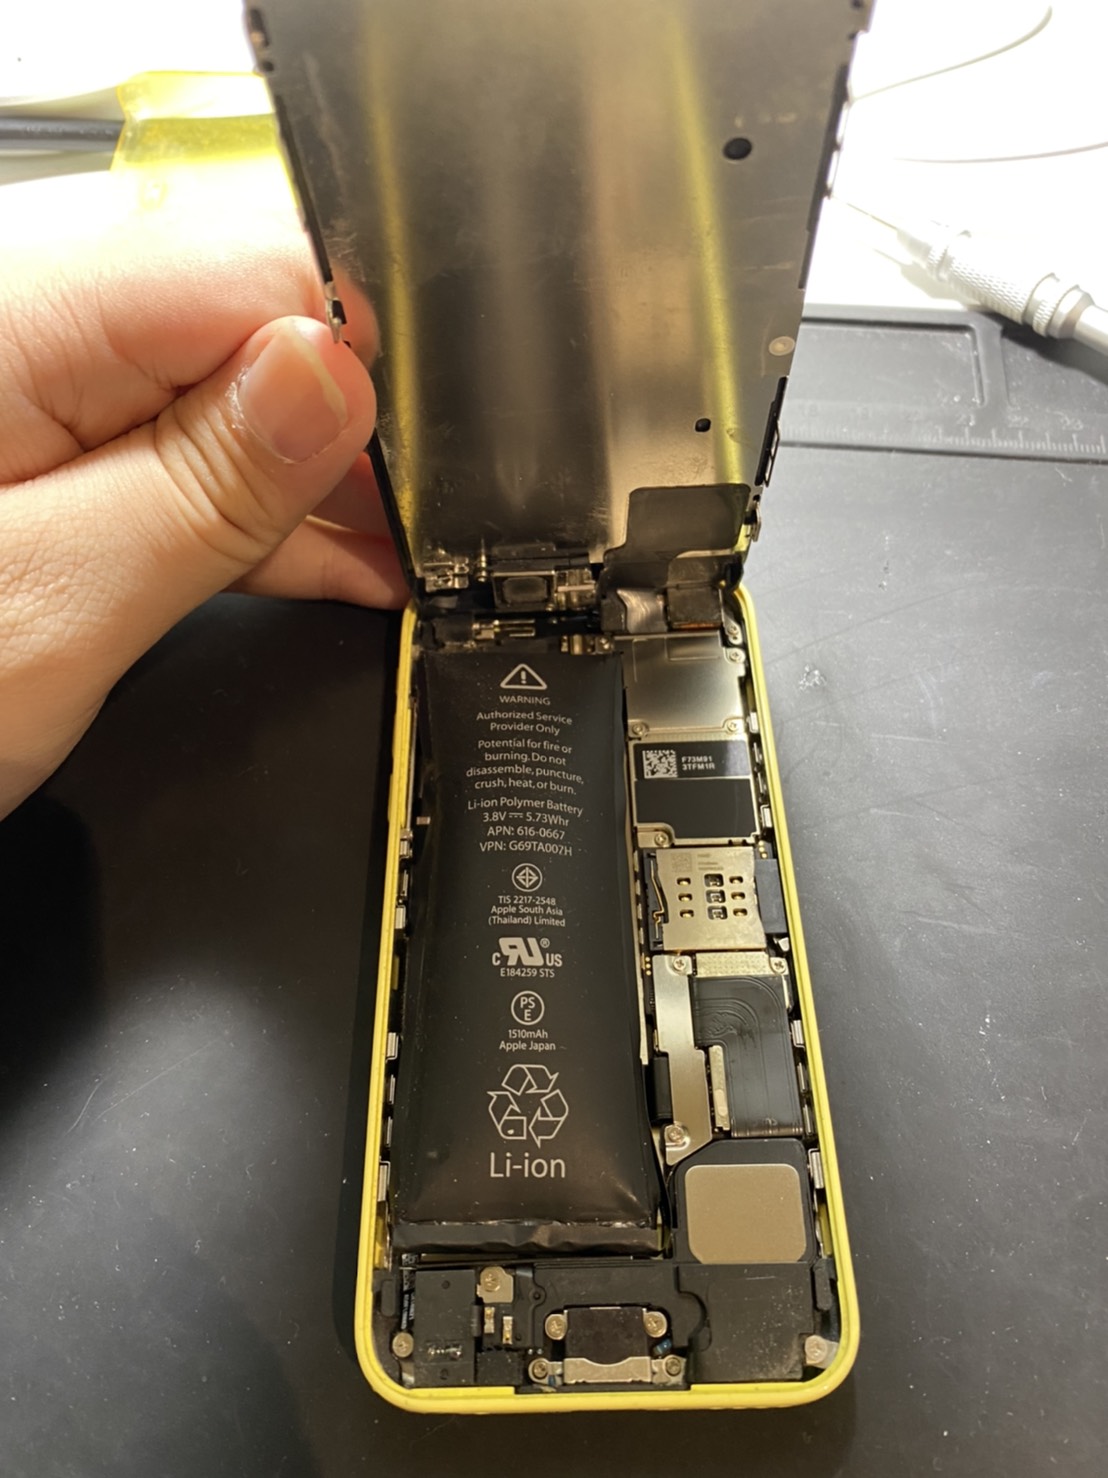 【iPhone 画面修理 仙台市 若林区】最新機種iPhone12も修理ができちゃうお店デジプロあいプロ ララガーデン仙台店